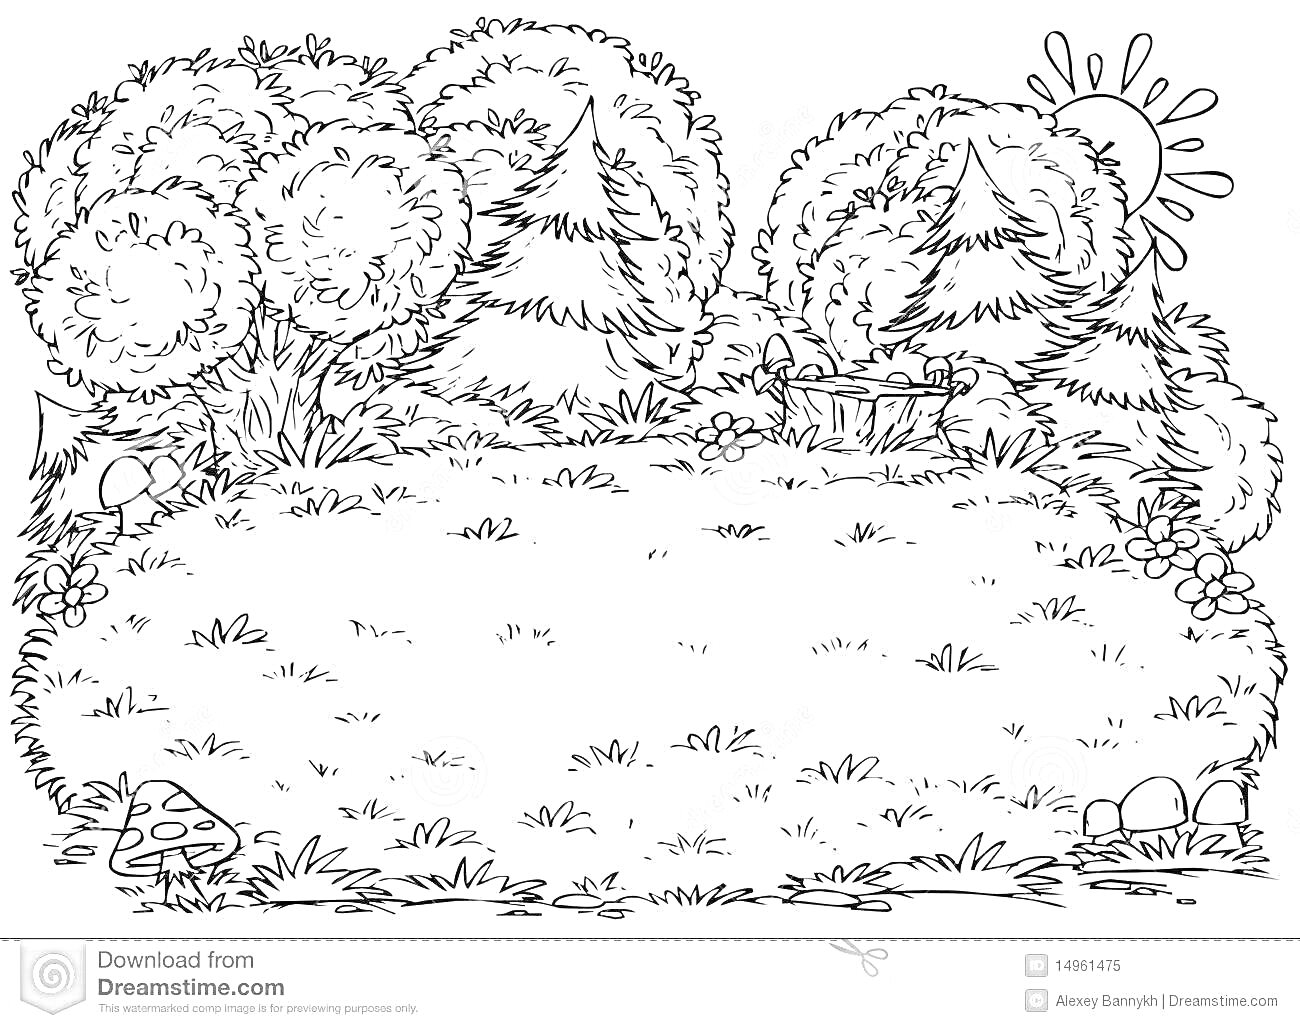 Раскраска Лесная полянка с деревьями, кустами, пнями, грибами и солнцем